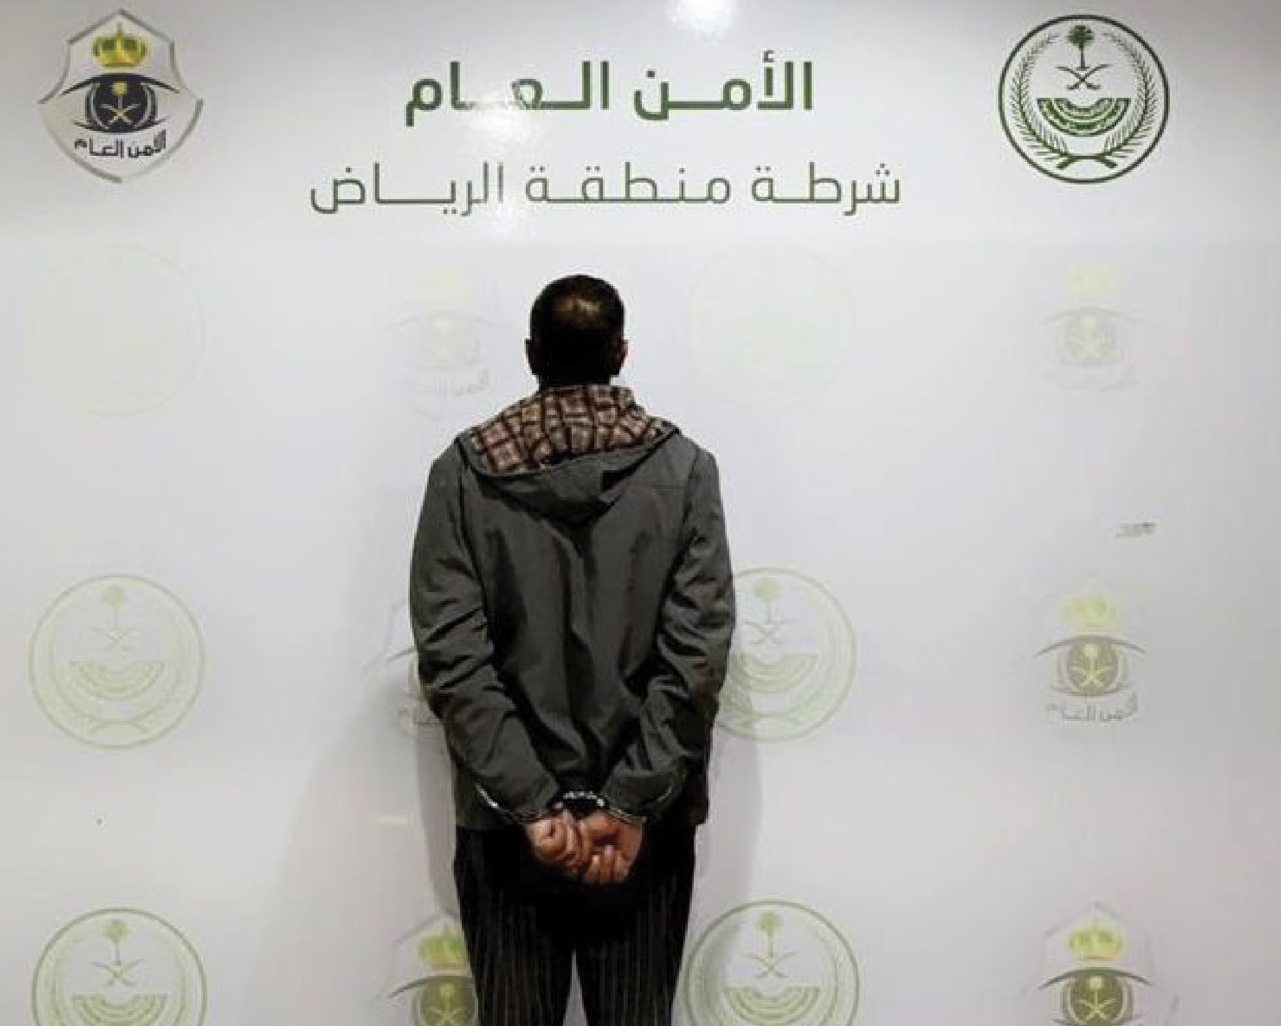 شرطة منطقة الرياض تقبض على شخص تحرش بفتاة